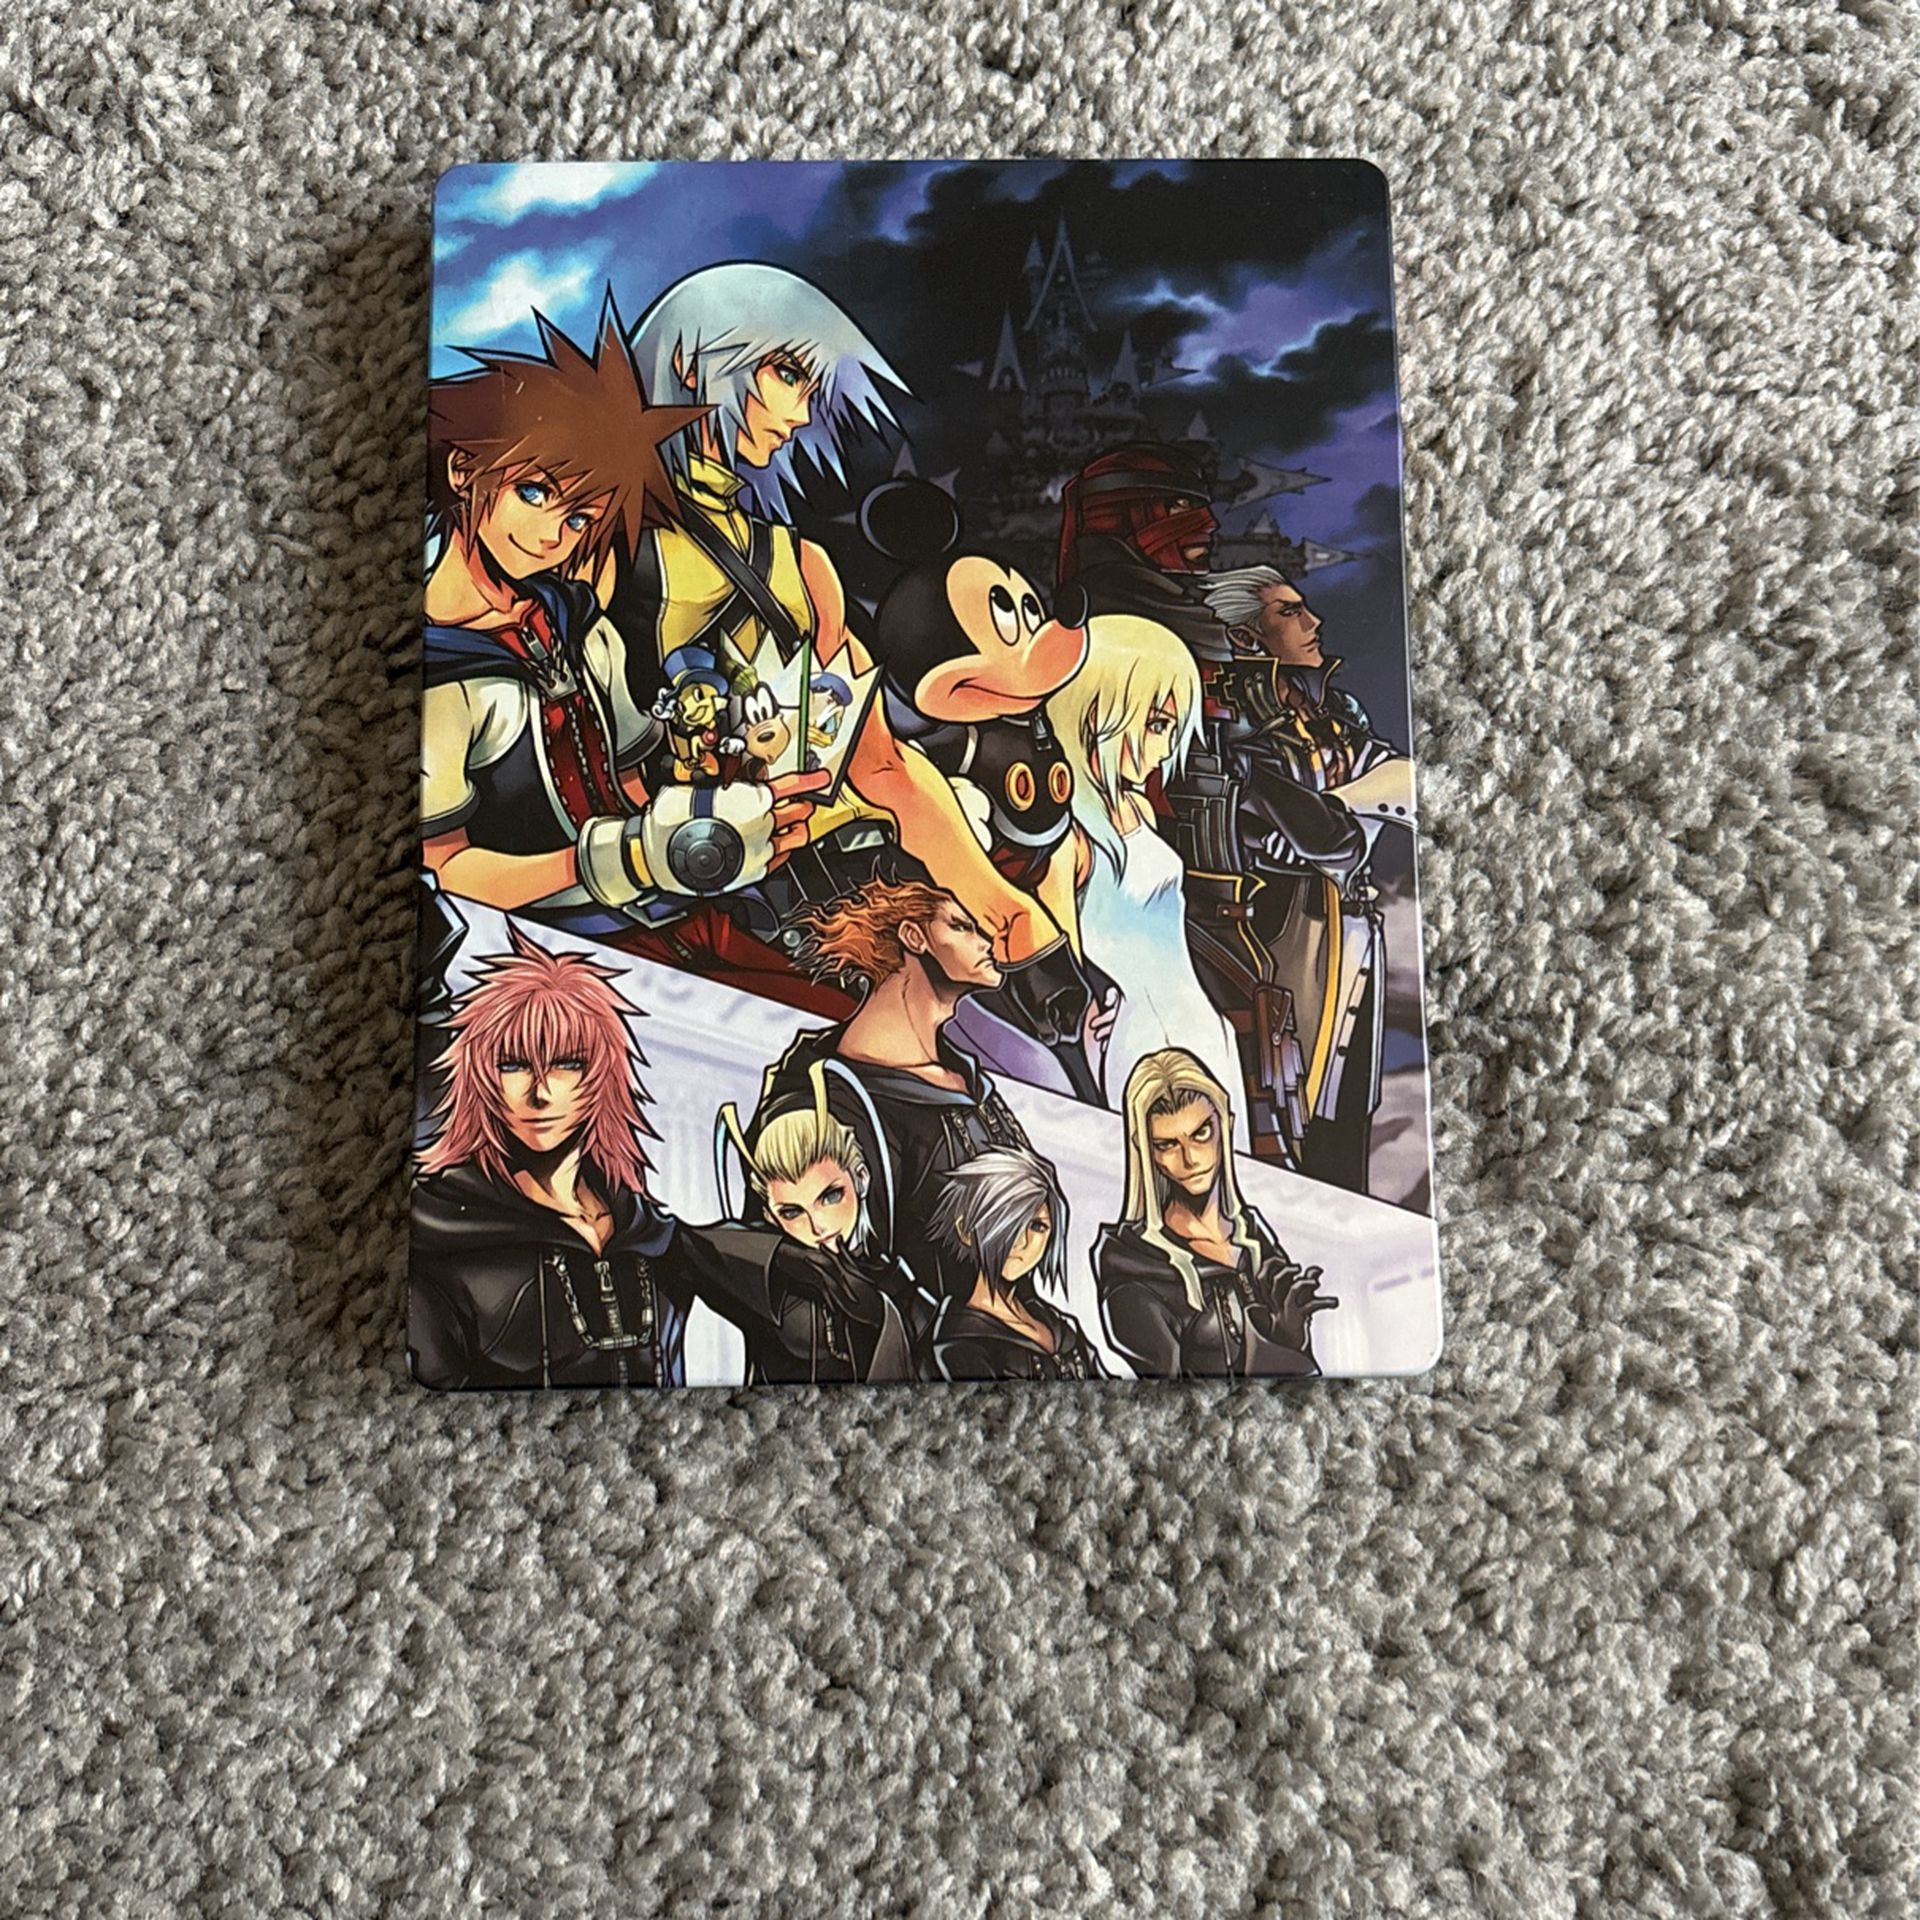 Kingdom Hearts 2.5 HD Remix Steel book